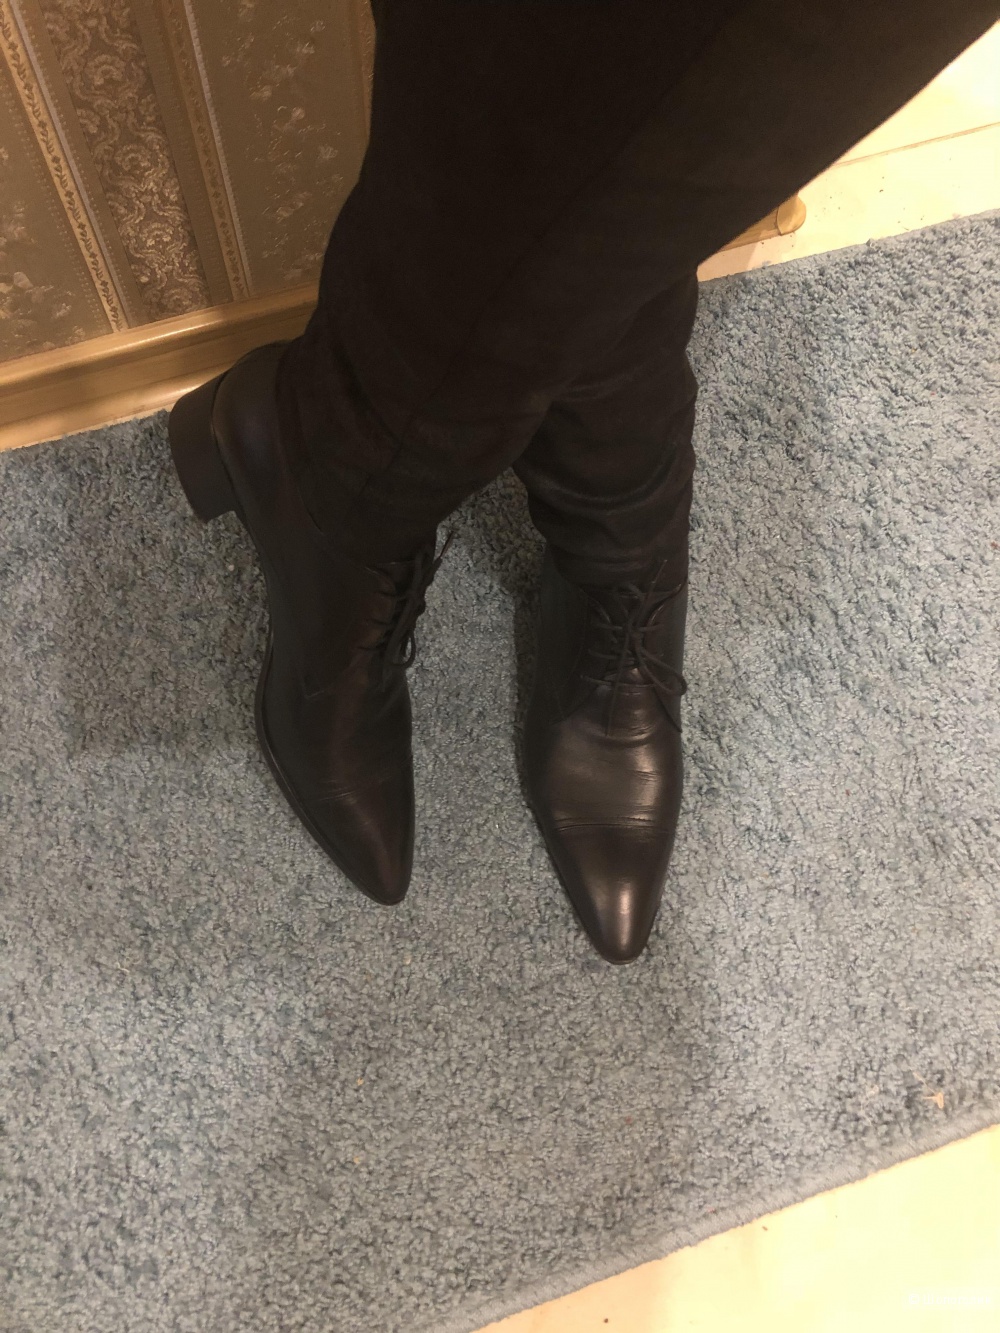 Ботинки на шнурках JIL SANDER,39